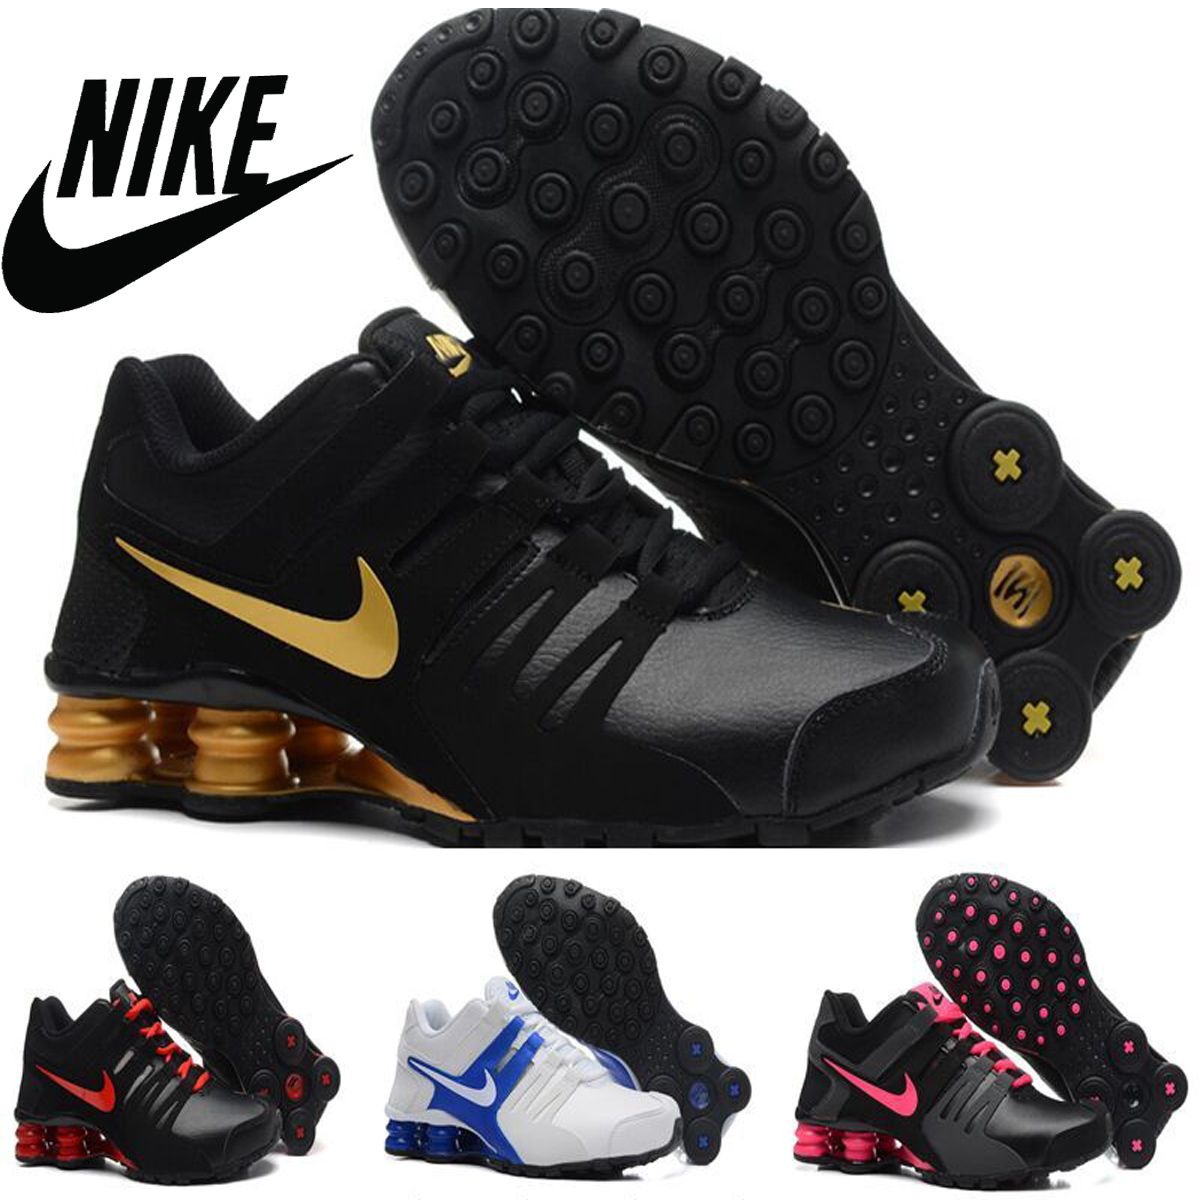 Nike Shox zapatos de los zapatos corrientes de 2016 nuevos entrenadores atléticos zapatos calzado